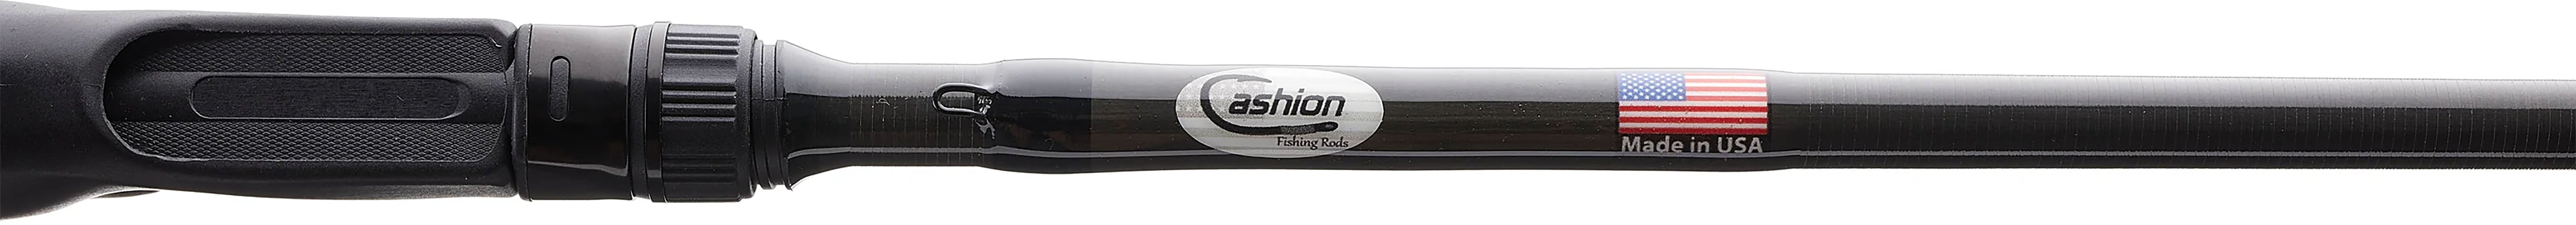 Cashion CORE Series Casting Rods